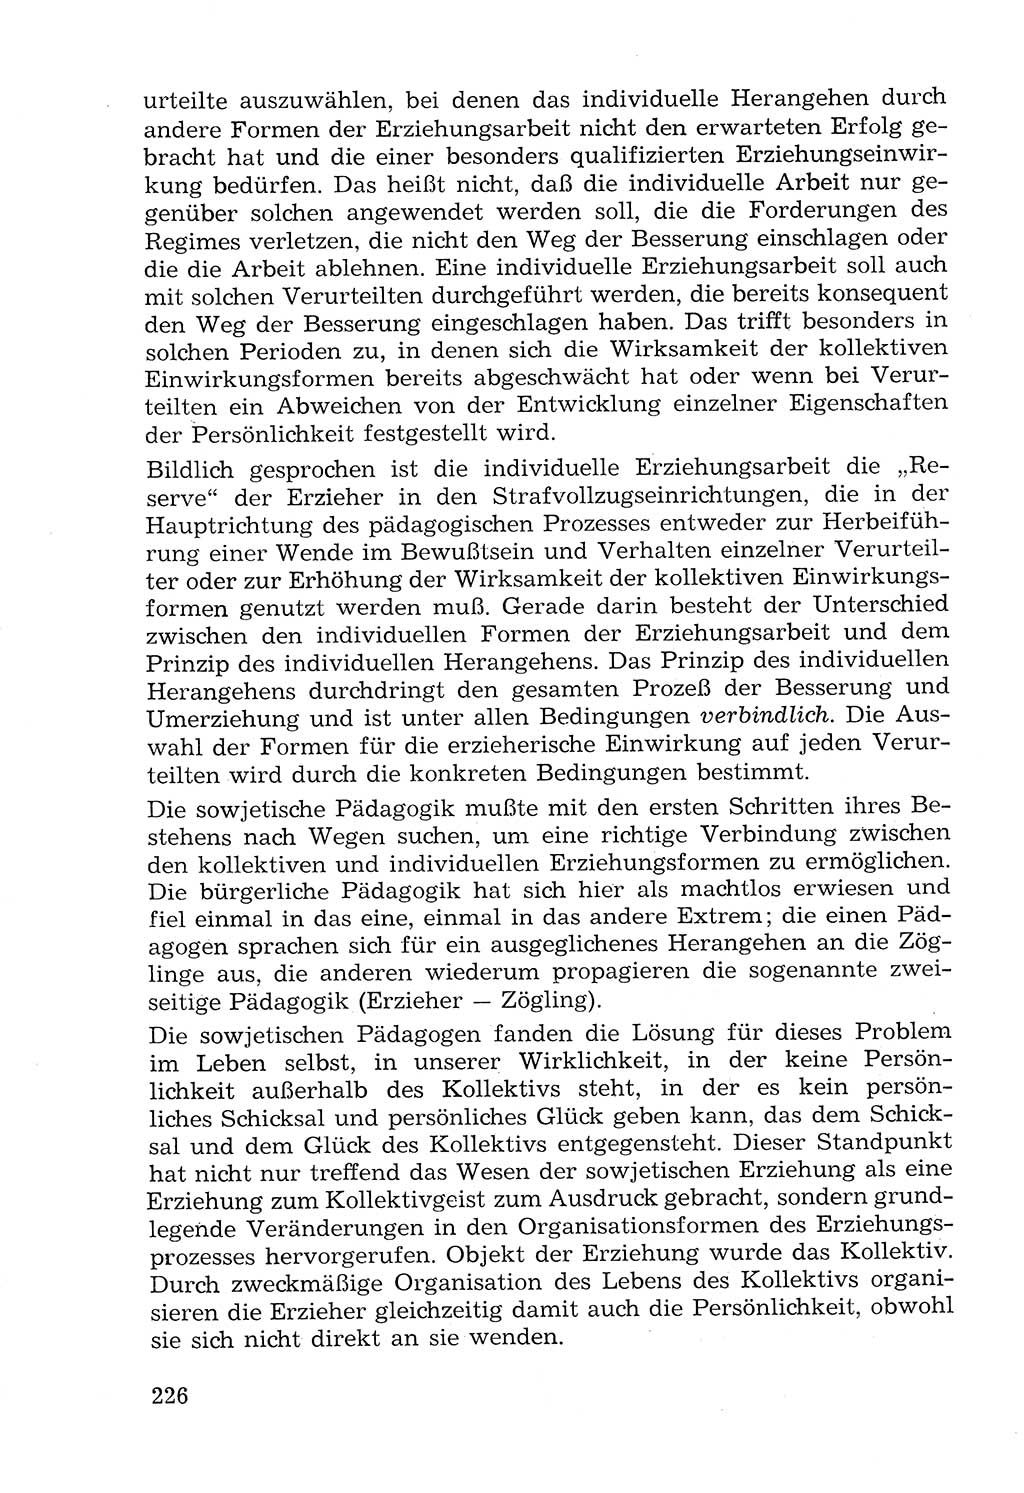 Lehrbuch der Strafvollzugspädagogik [Deutsche Demokratische Republik (DDR)] 1969, Seite 226 (Lb. SV-Pd. DDR 1969, S. 226)